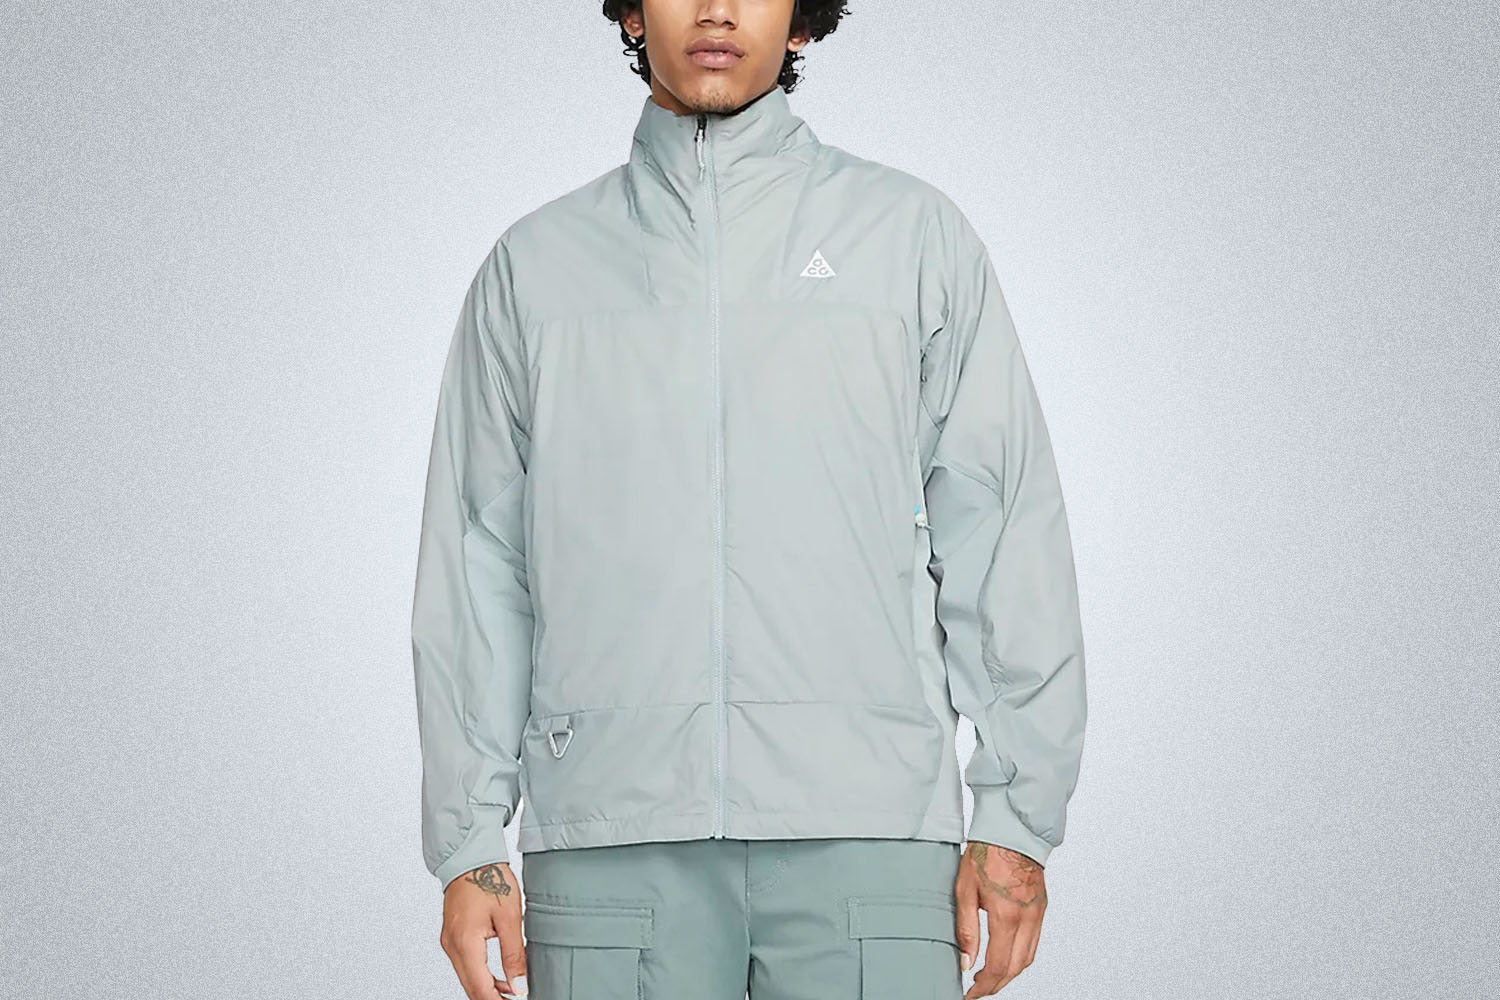 Nike ACG “Sierra Light” Jacket